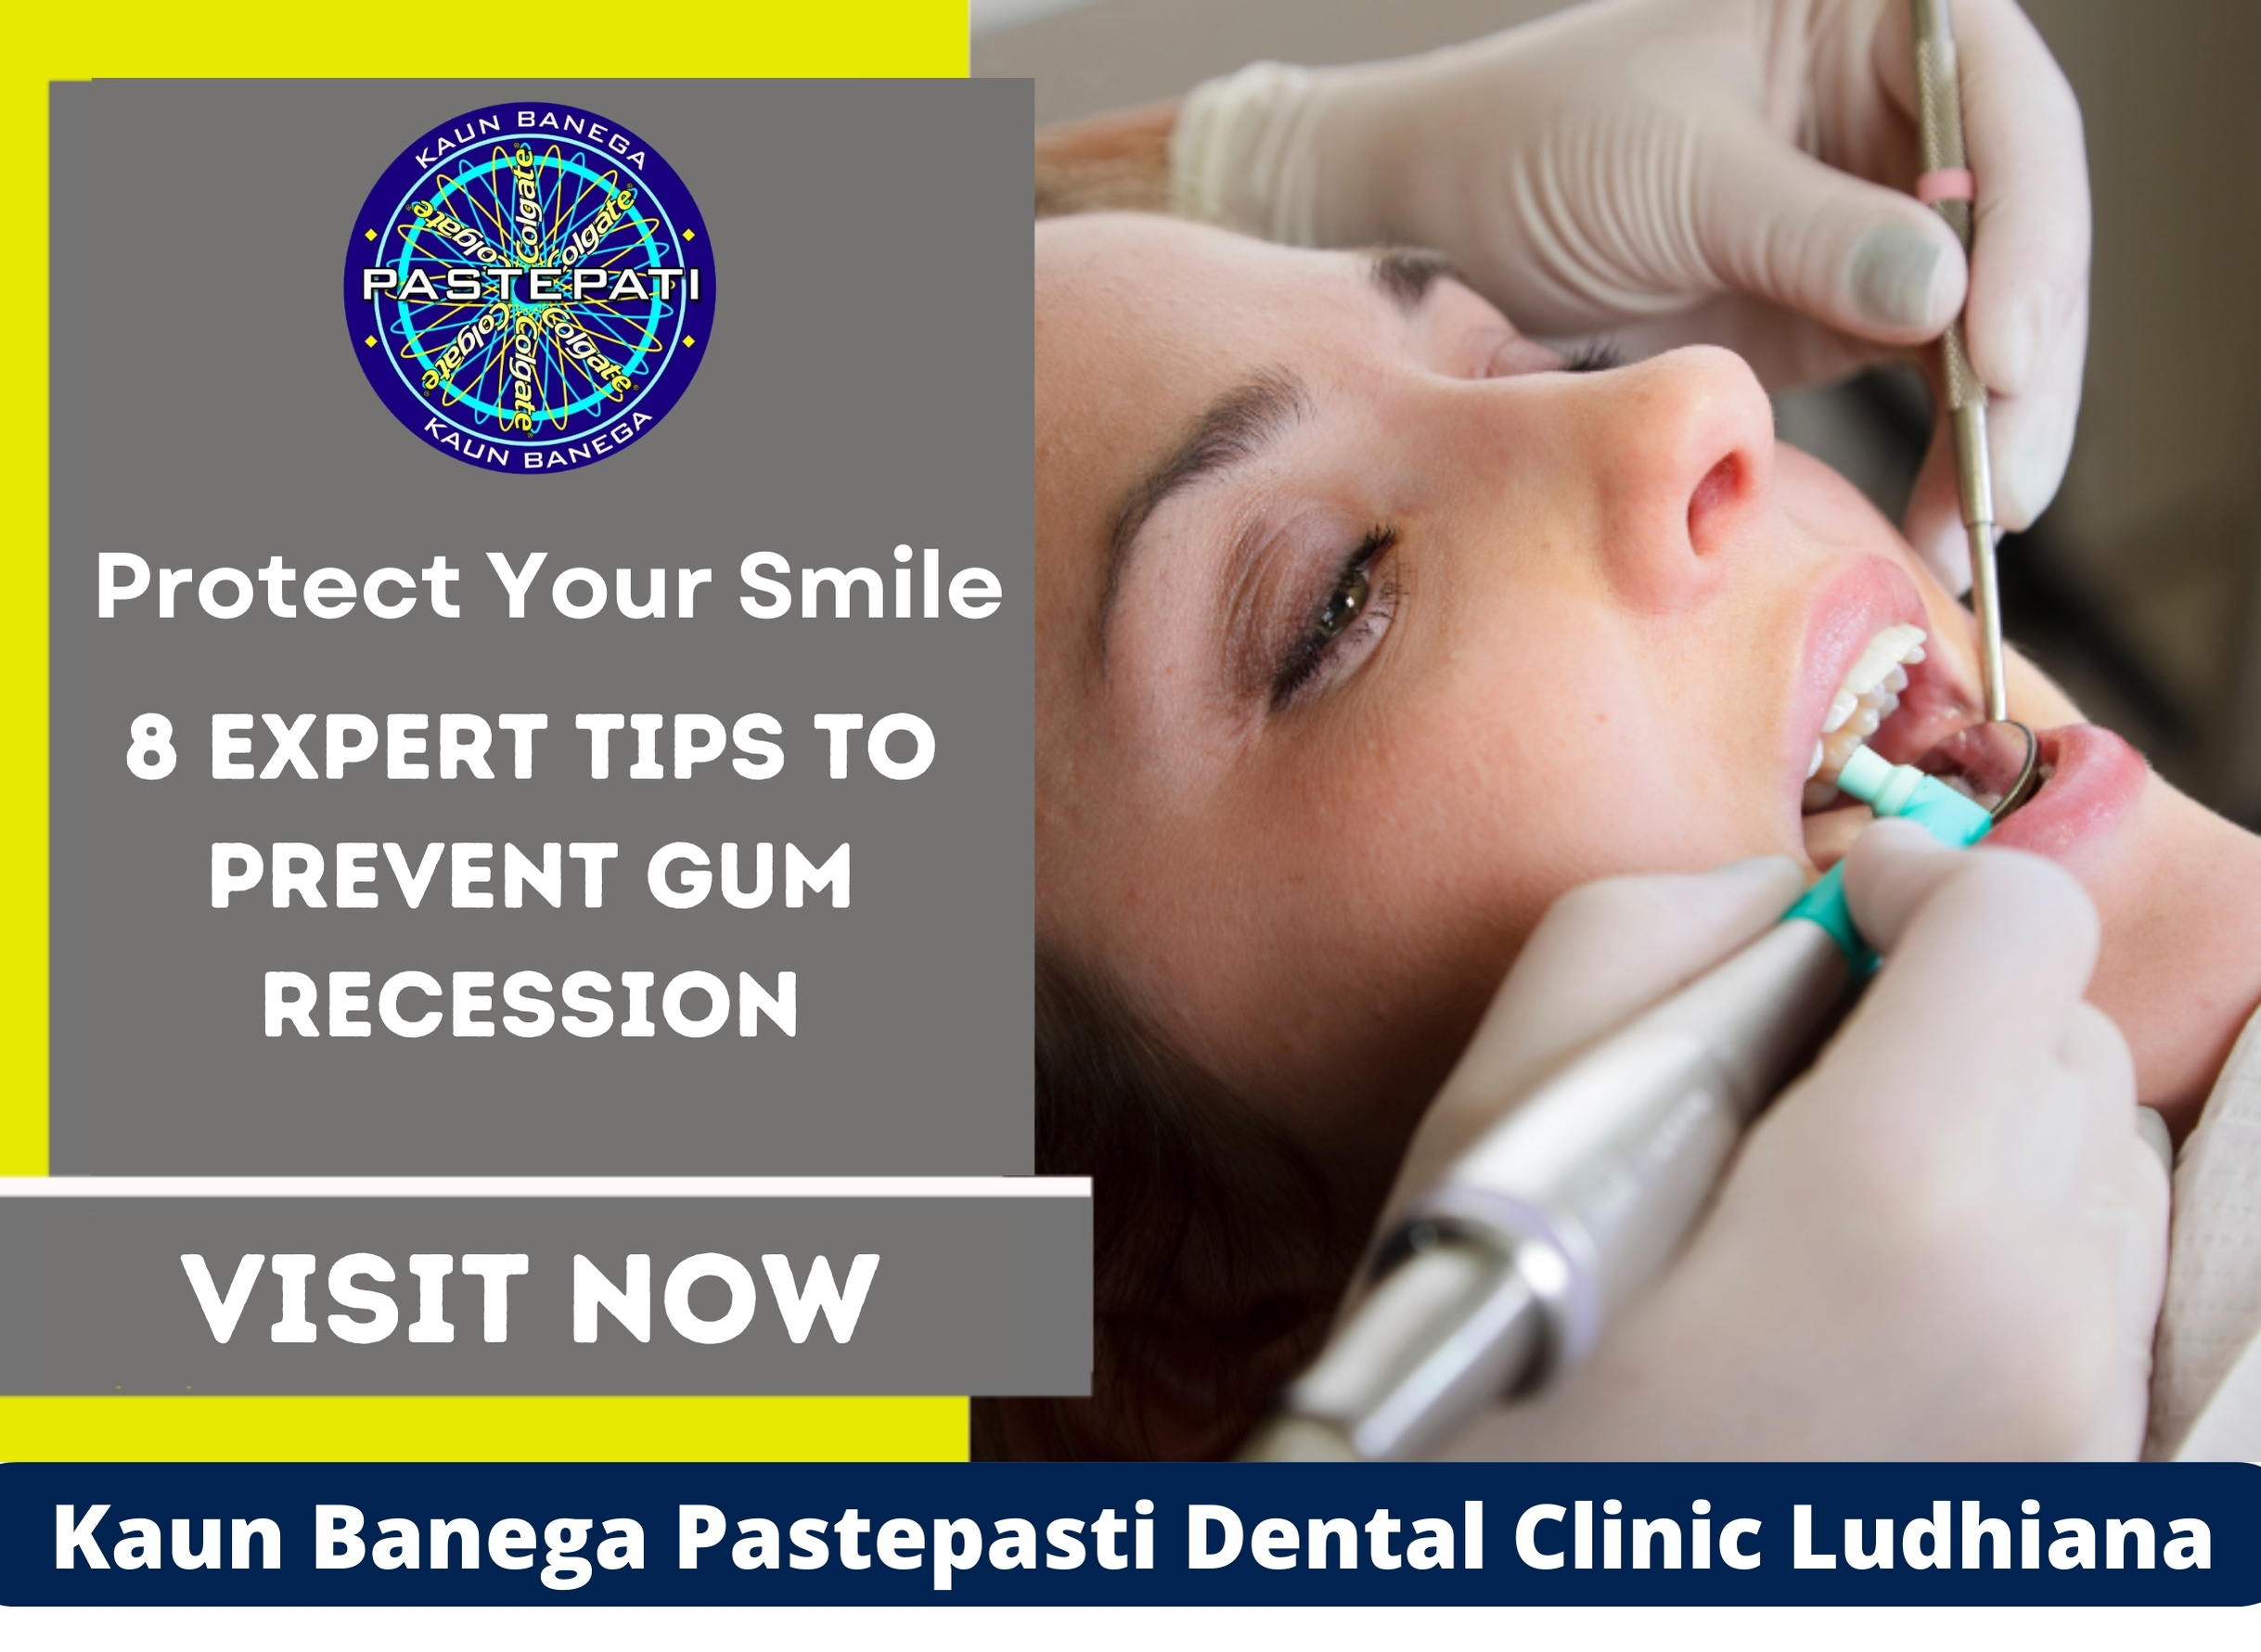 Dental Clinic in Ludhiana, Dental Clinic in jamalpur, Dentist in ludhiana, Dentist in jamalpur, dental care, general dentistry, Kaun Banega Pastepasti Dental Clinic in Ludhiana